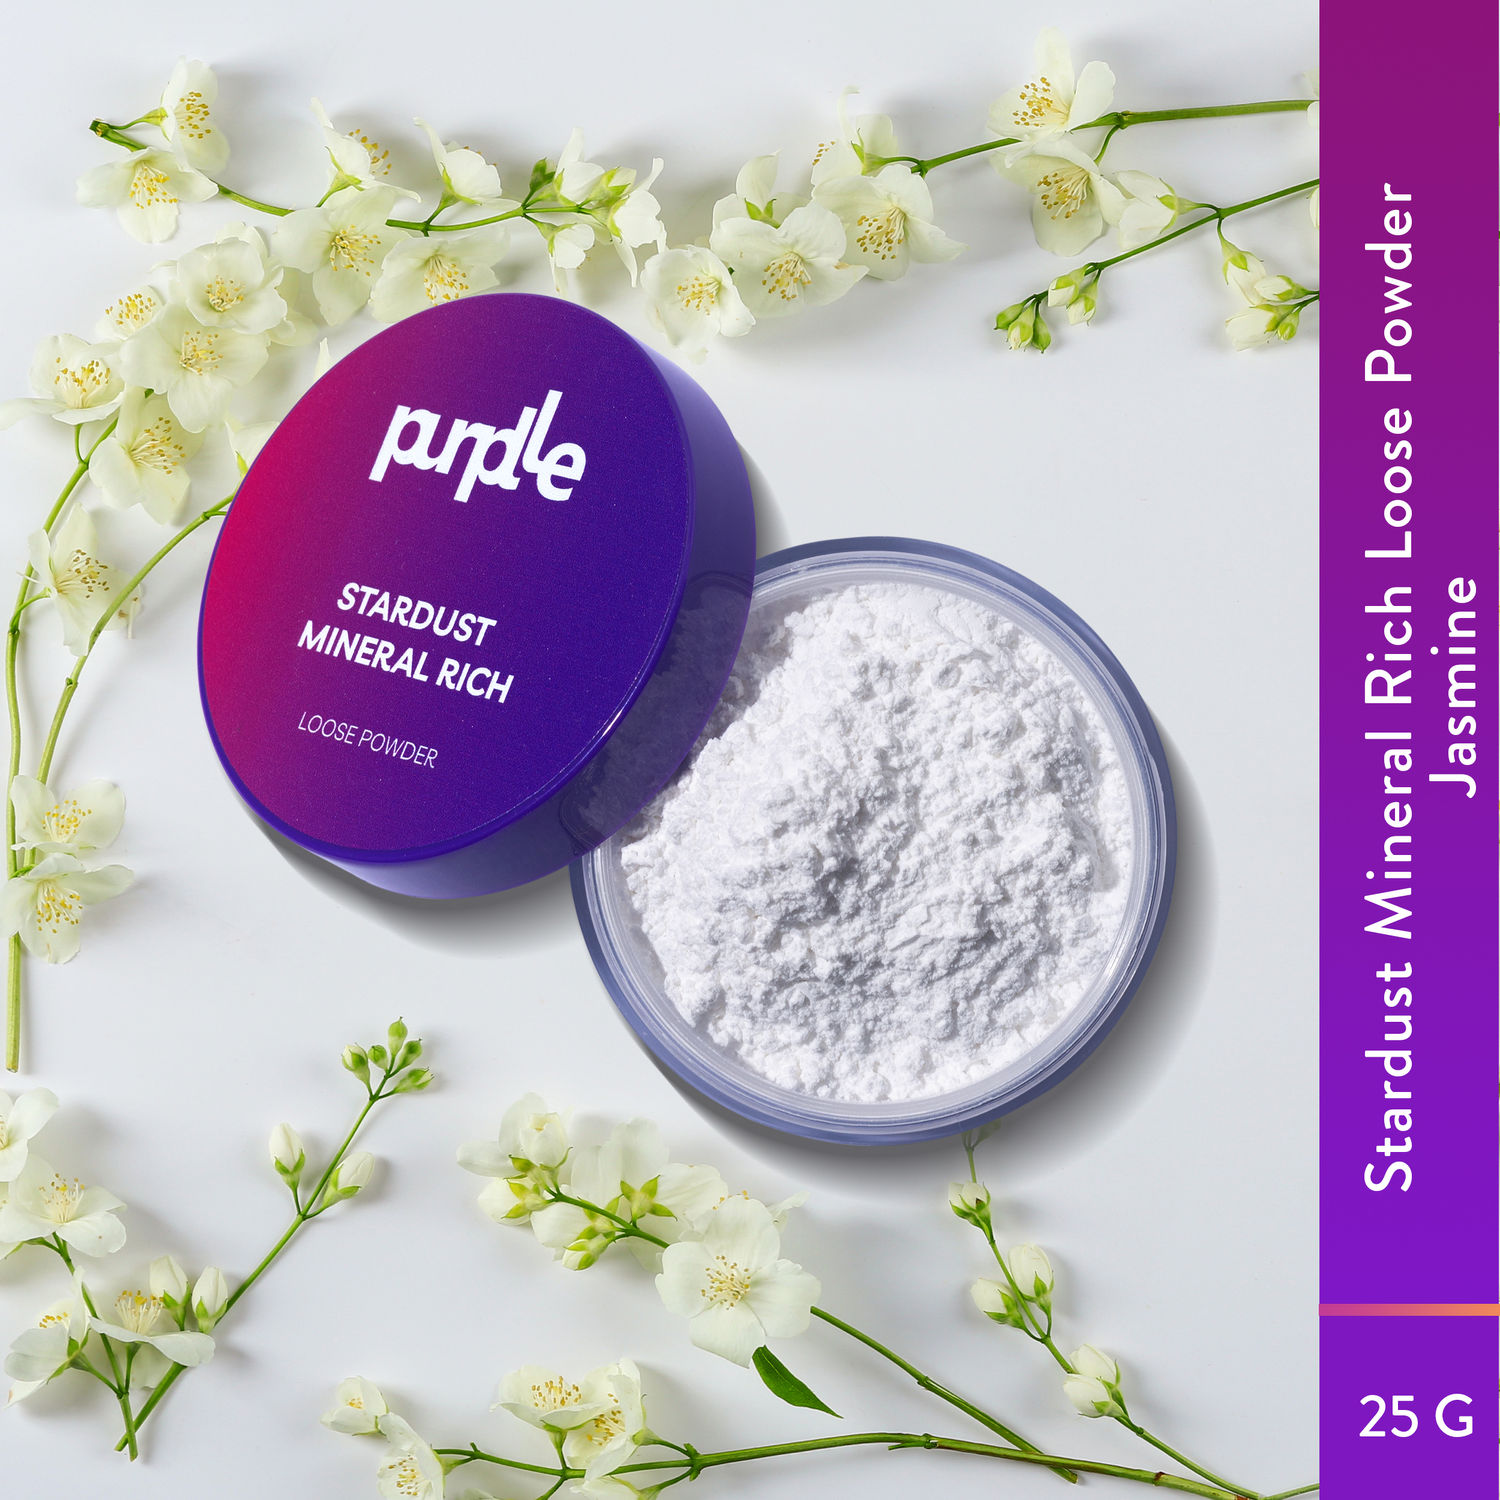 Purplle Stardust Mineral Rich Loose Powder - Jasmine 3 (25gm)